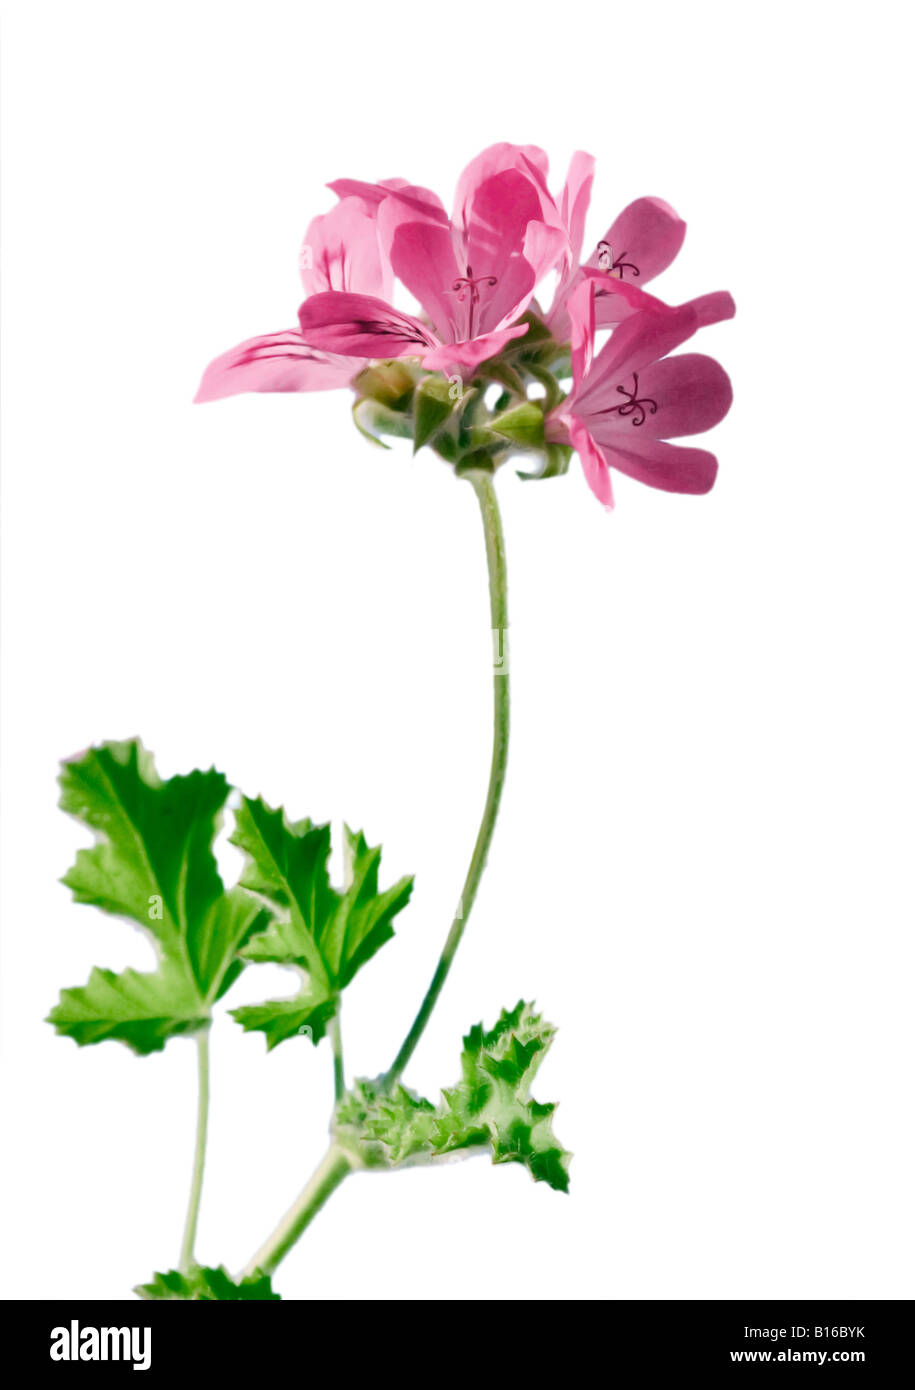 Flowering Geranium [Pelargonium] shot against a white background Stock Photo